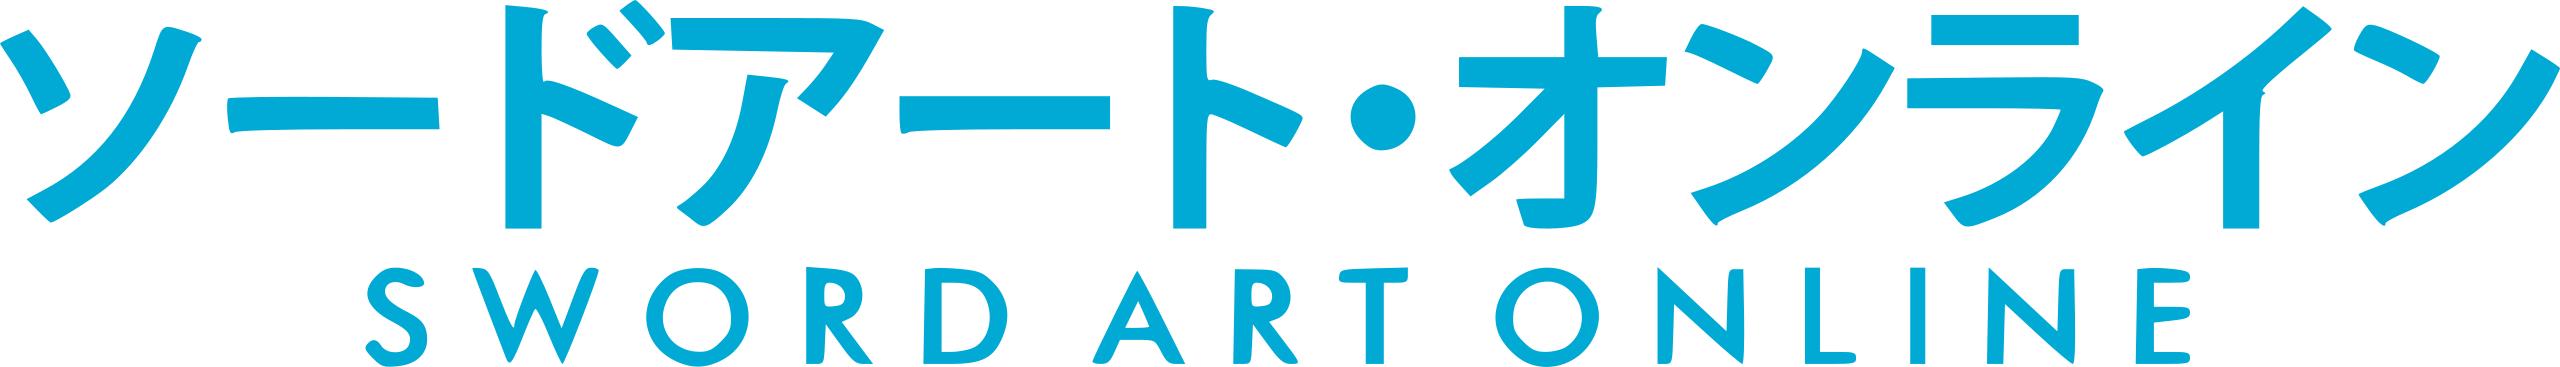 Sword Art Logo PNG File